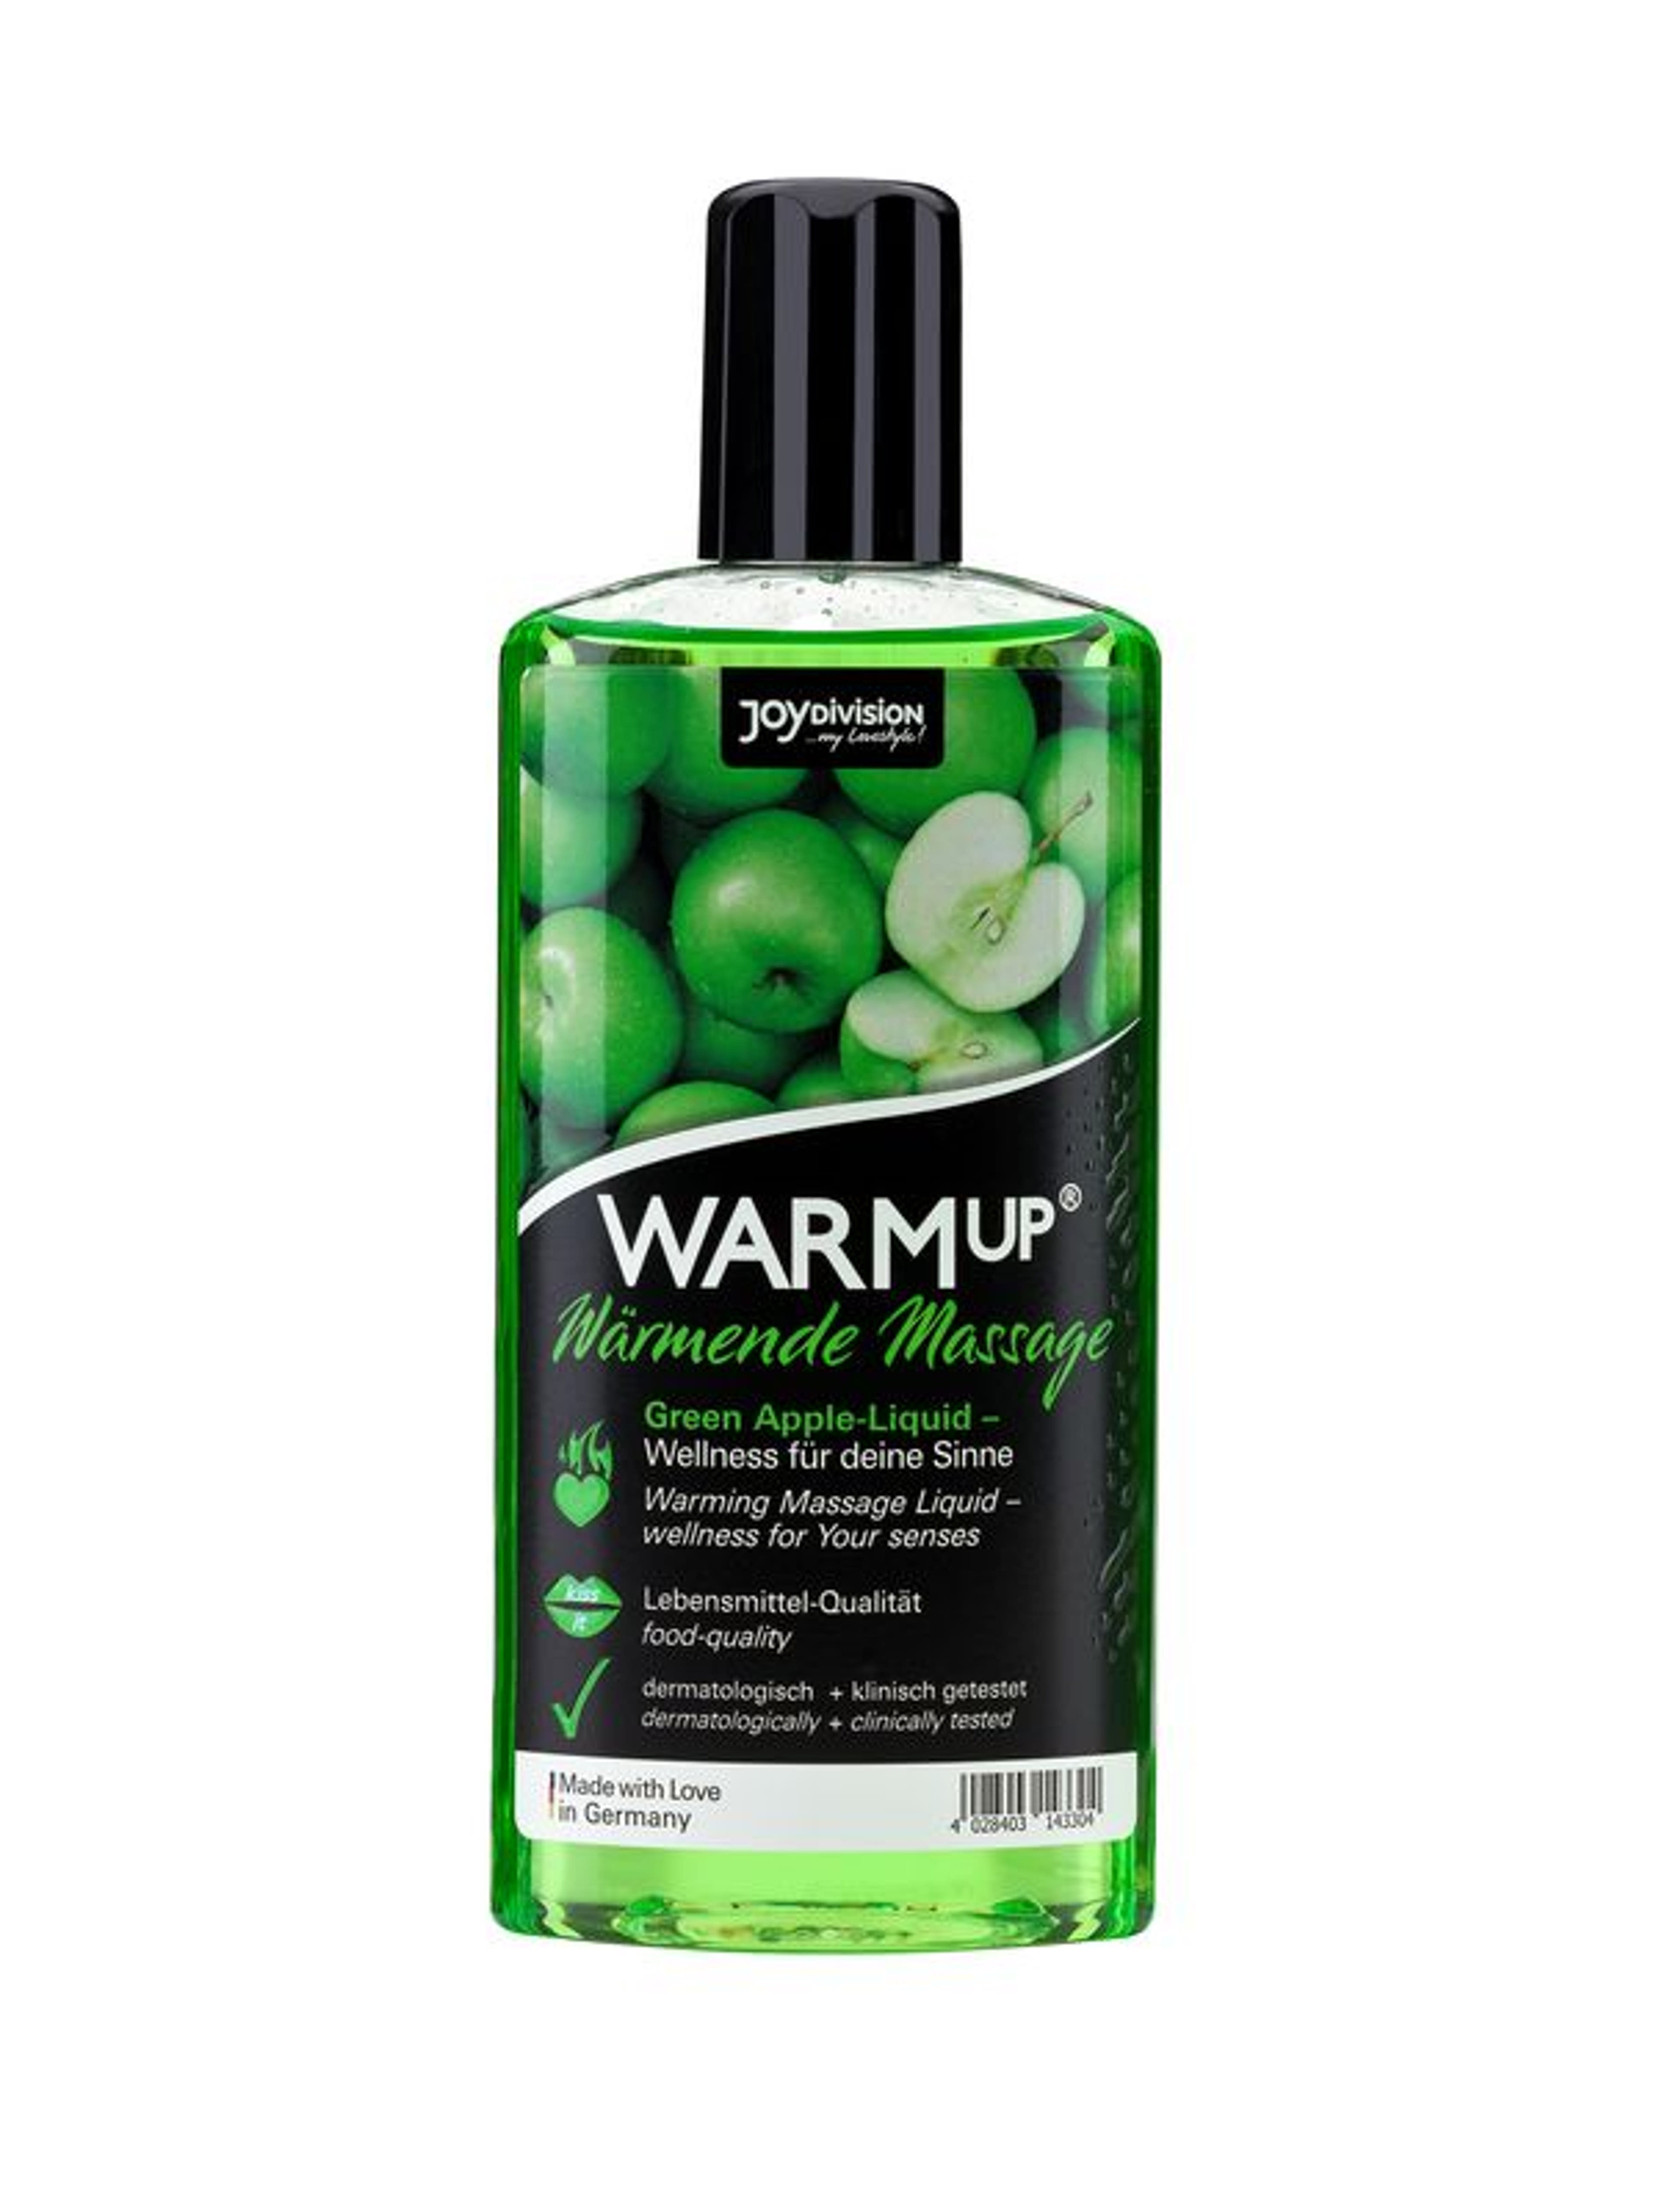 Joydivision warmup green apple - 150 ml-1